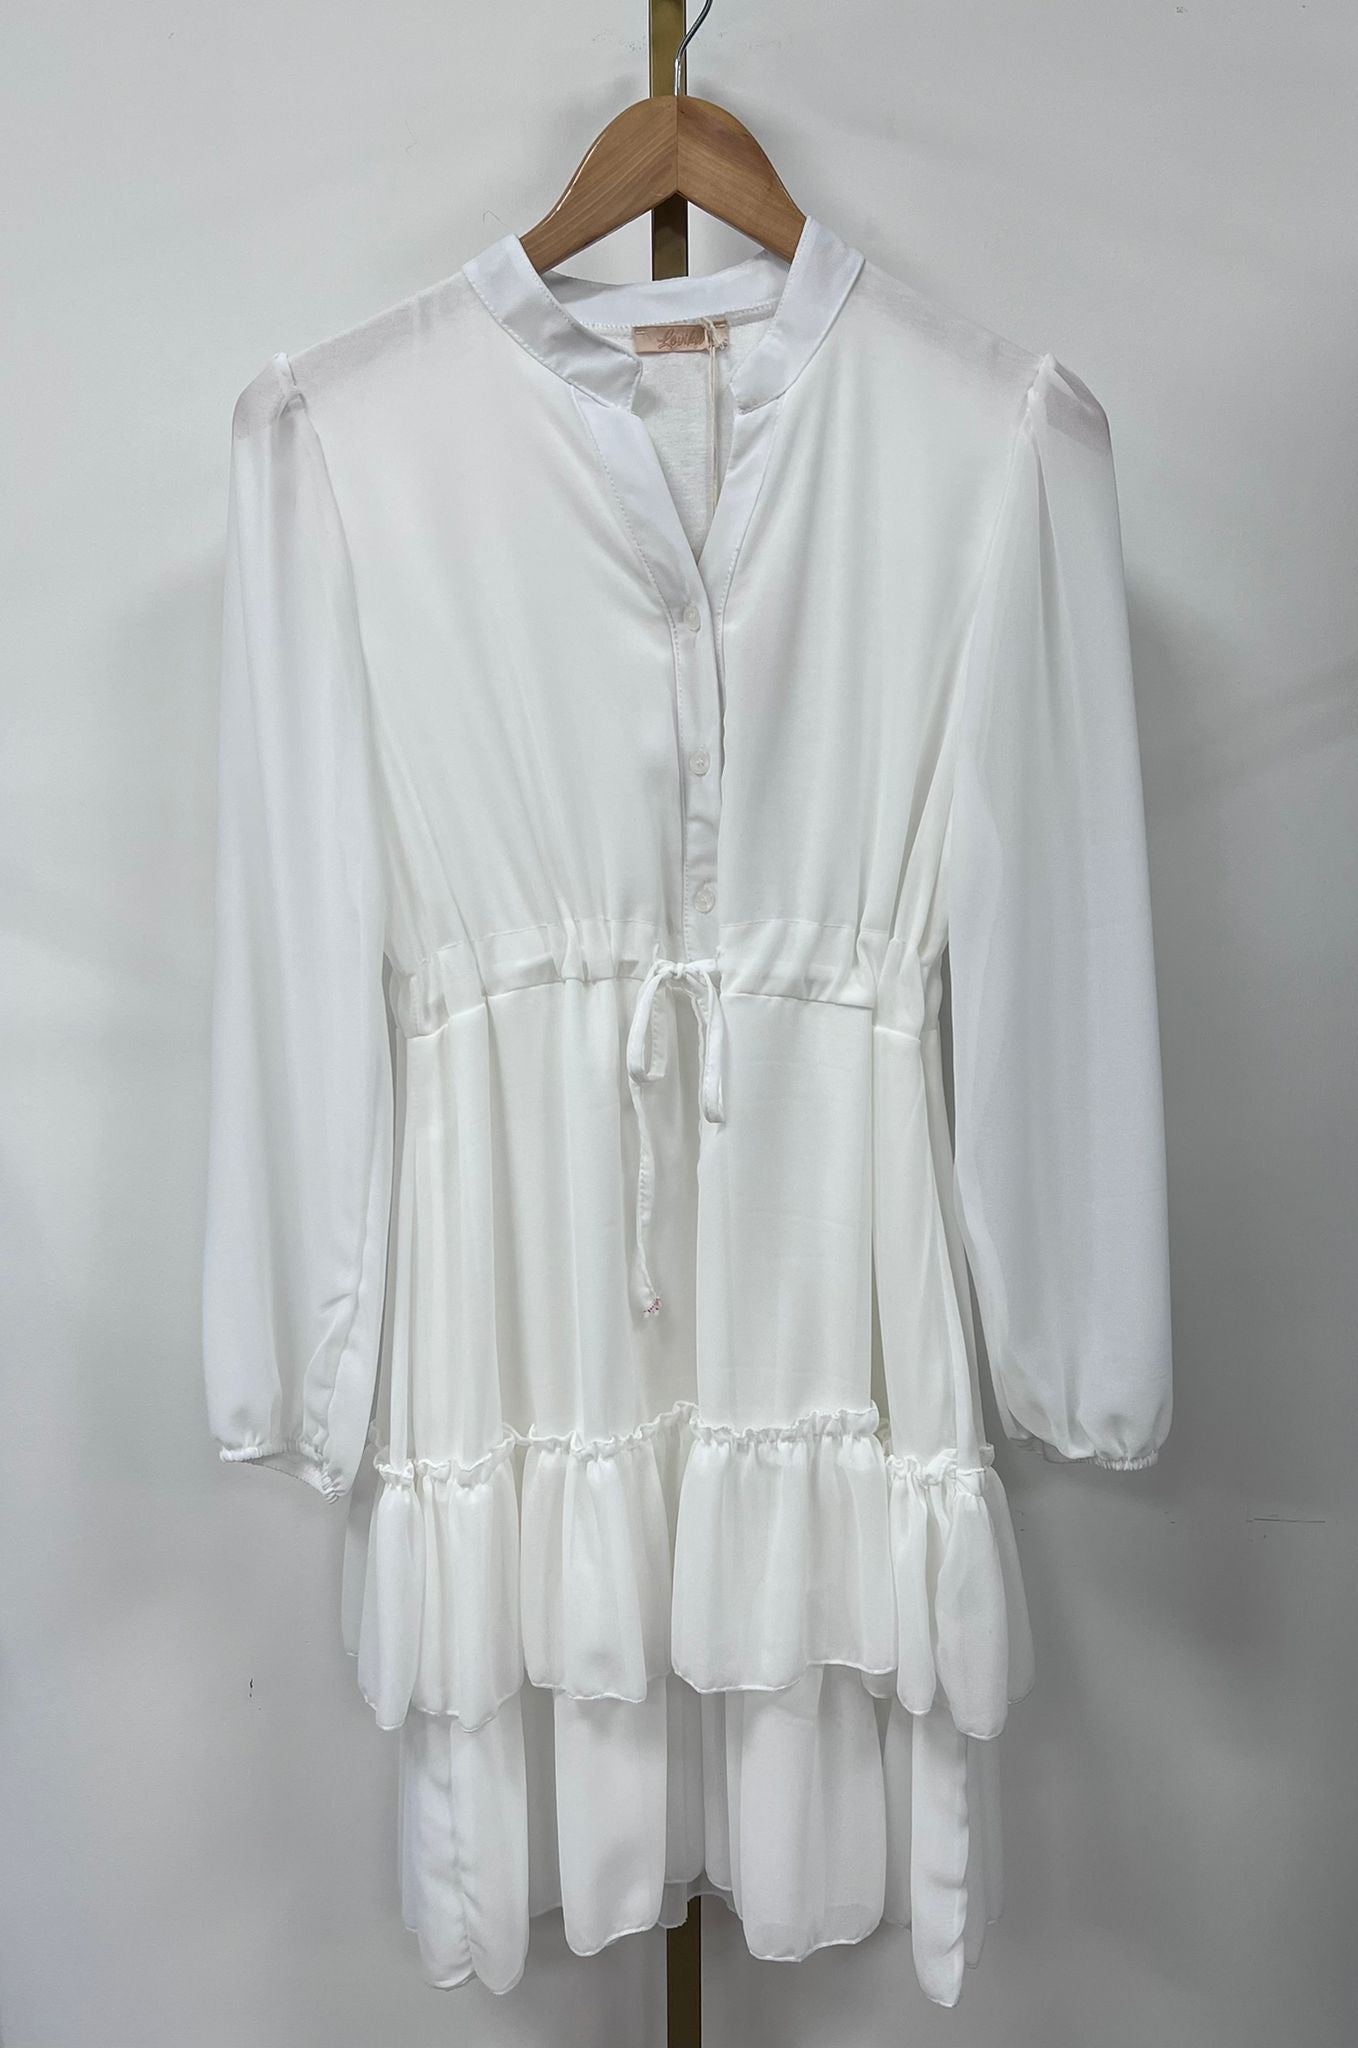 Dress ruffle 86789 Off-white